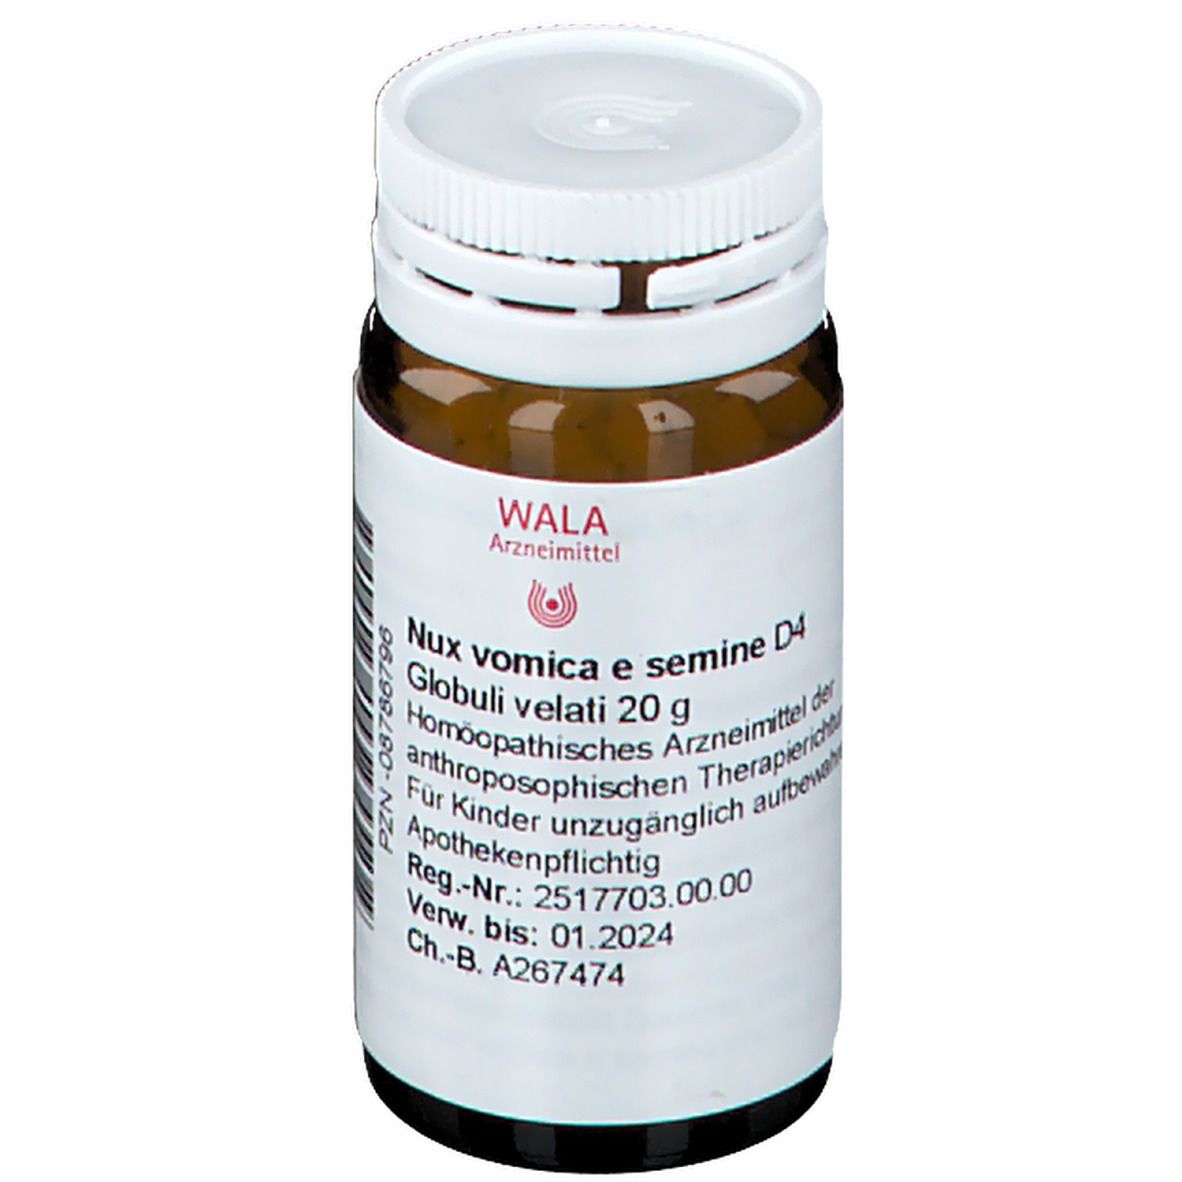 WALA® Nux vomica e semine D 4